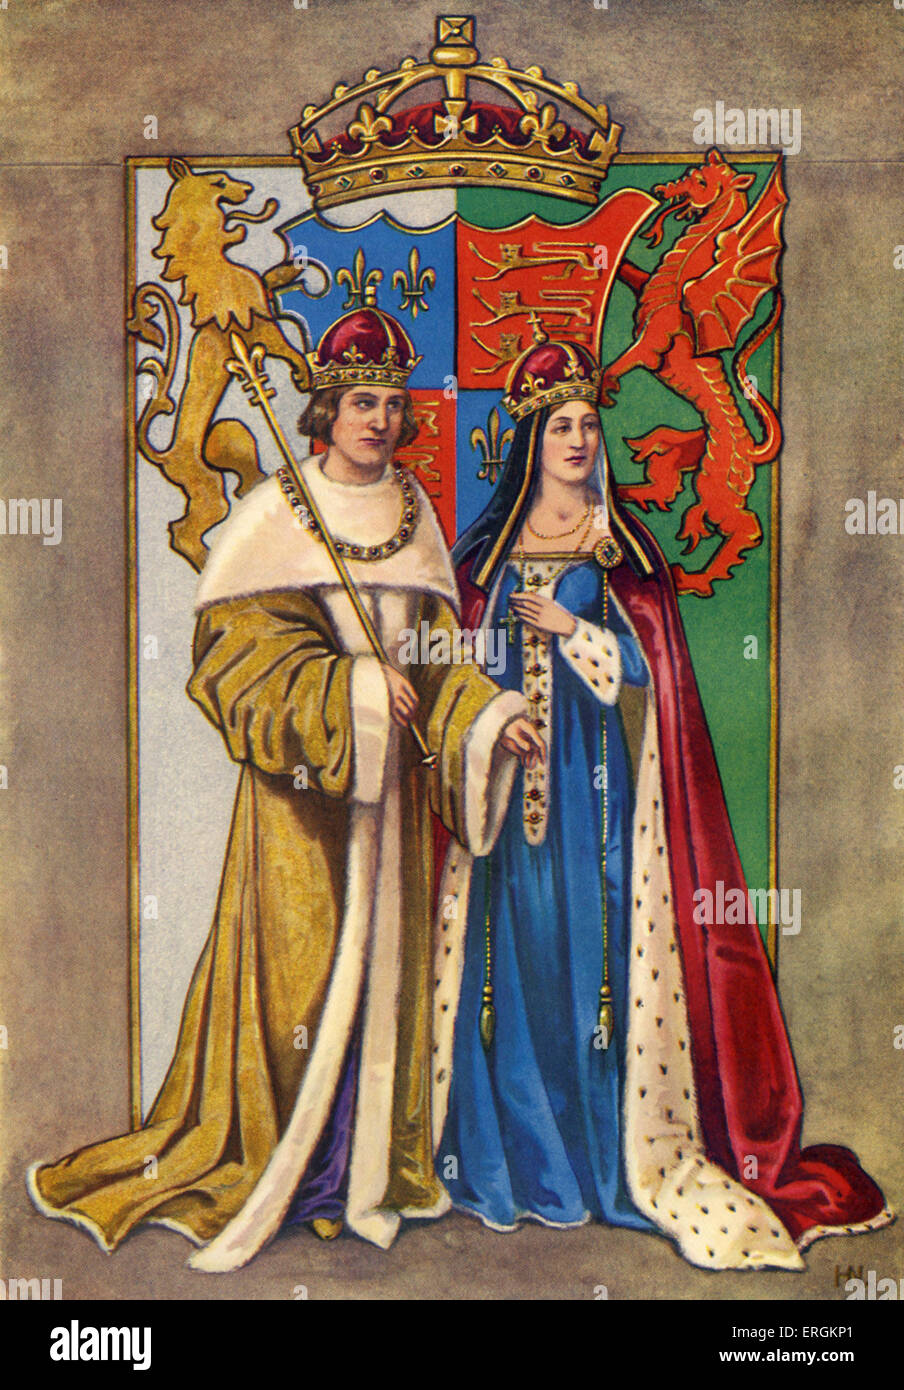 König Henry VII von England (1457-1509) im Bild mit Frau Königin Elysabeth / Queen Elizabeth / Elizabeth of York (1466-1503). Stockfoto